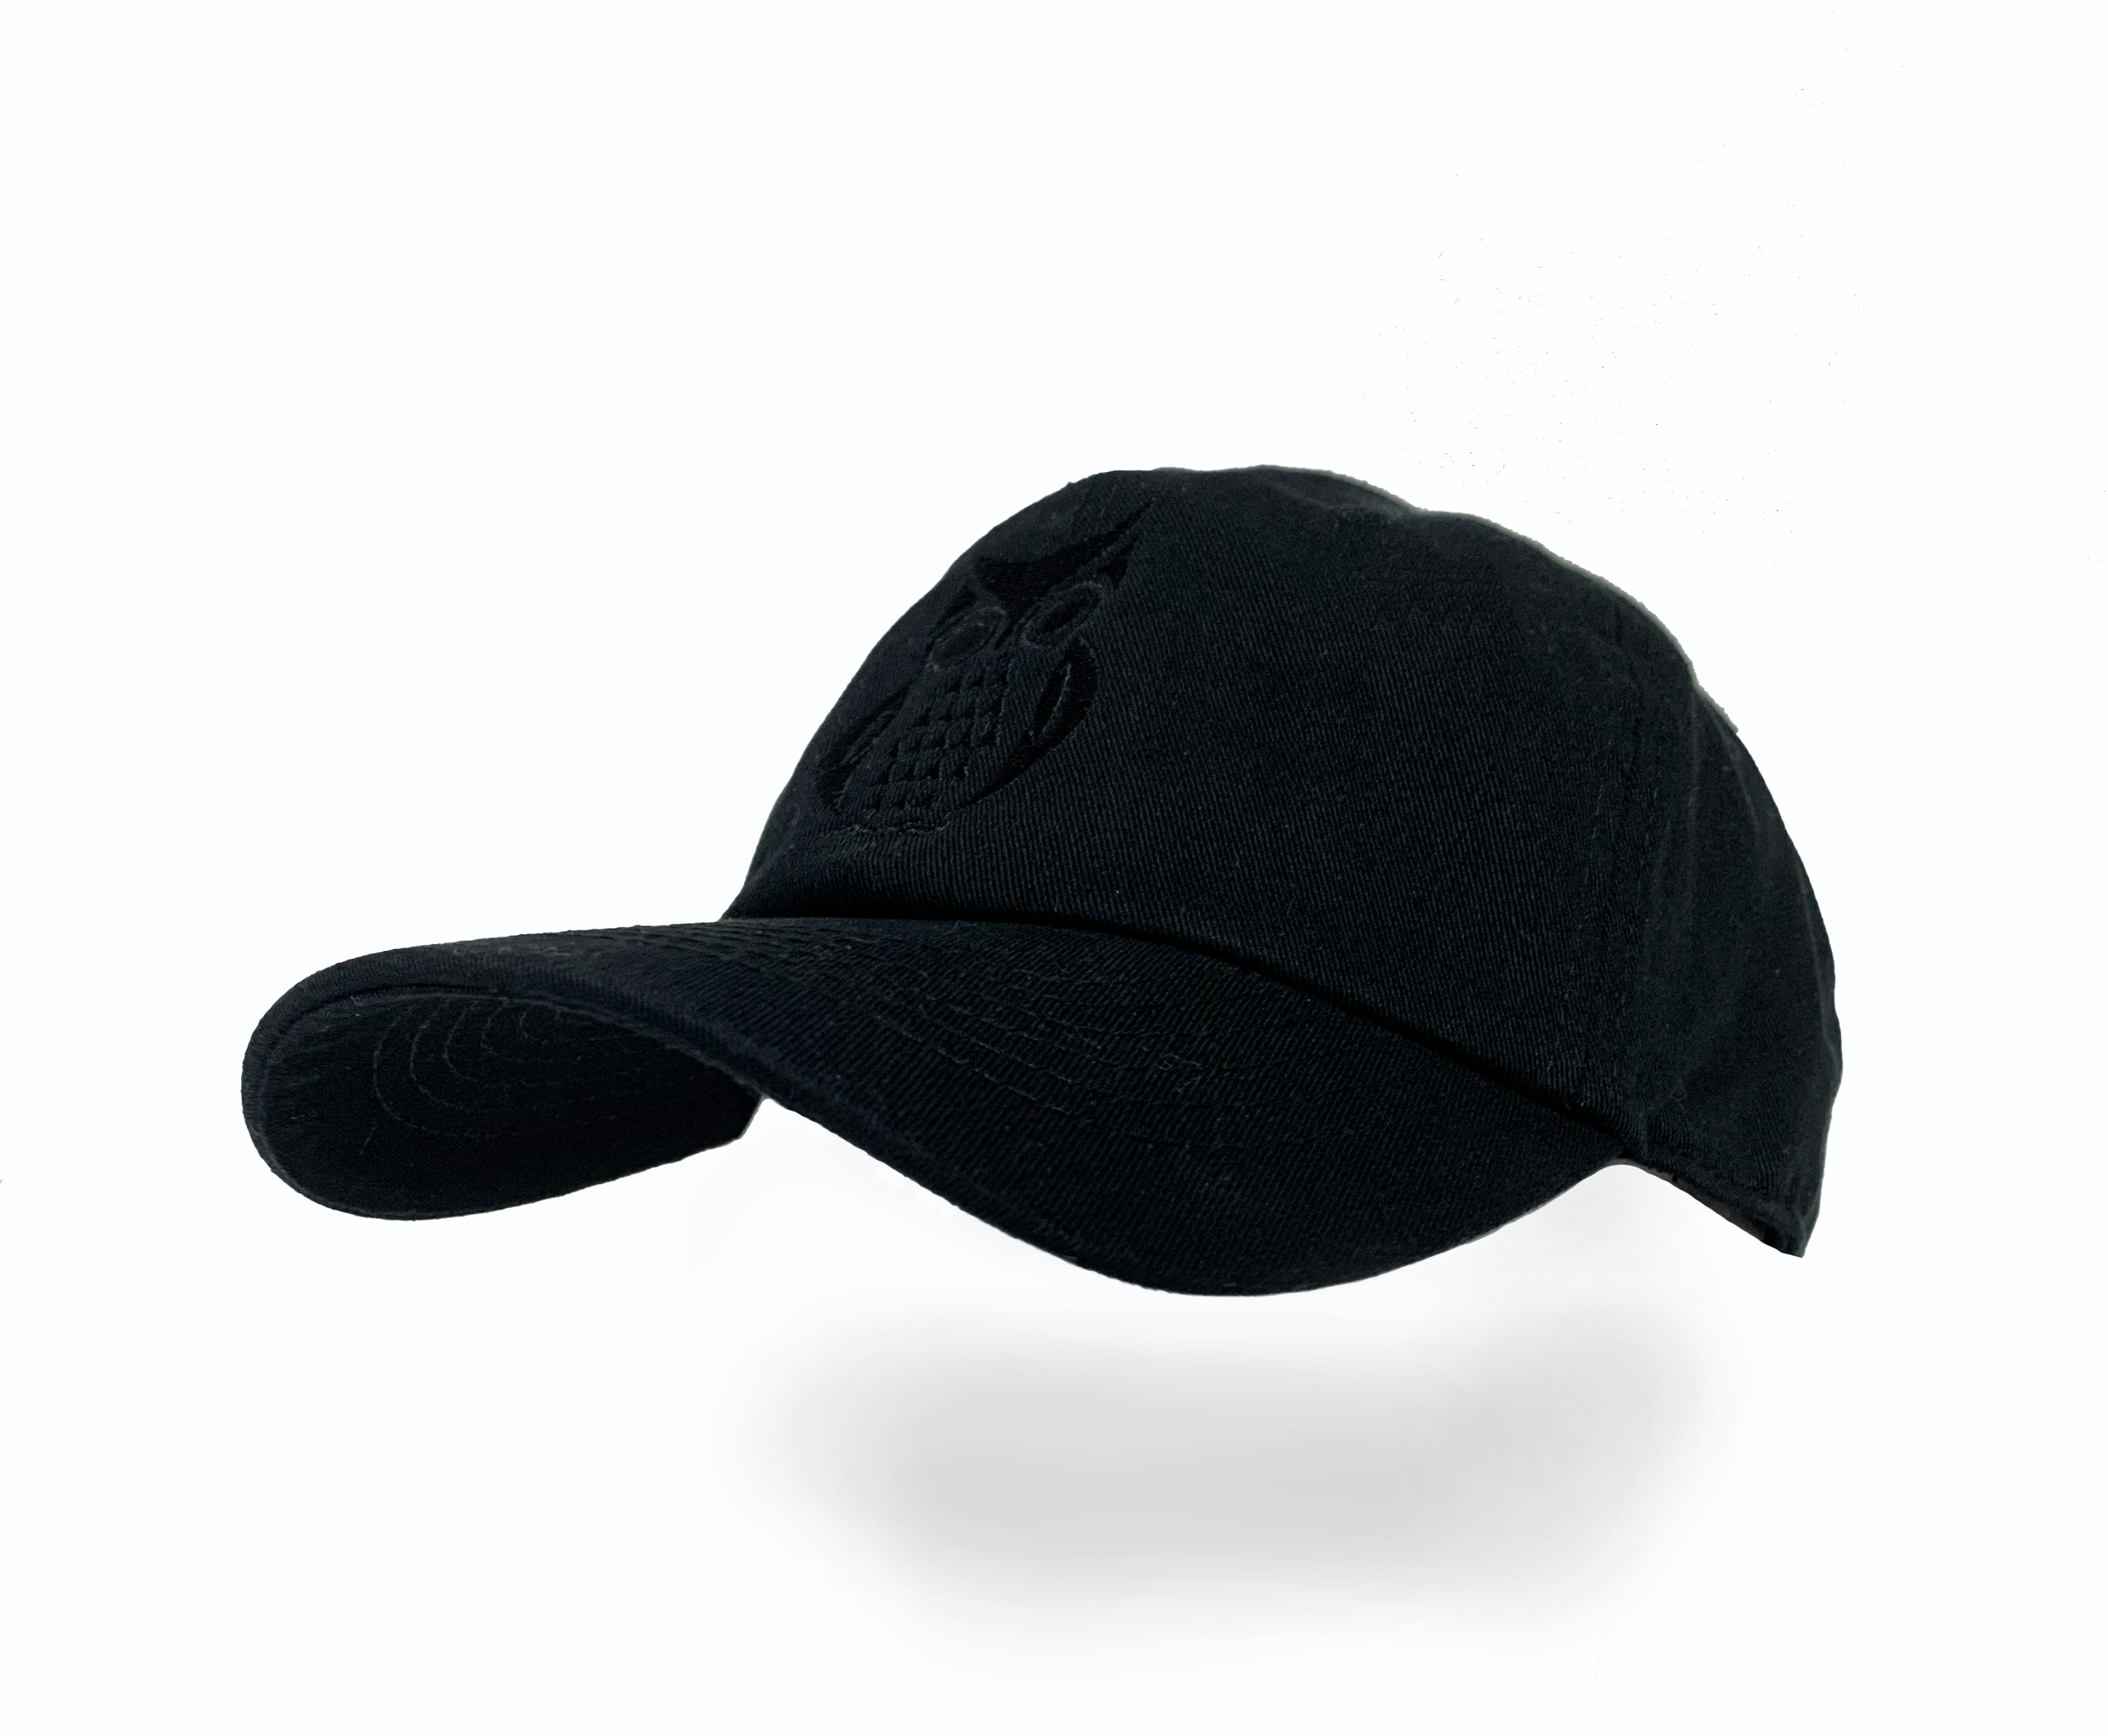 Hipster Vintage Baseball Cap - Full Black